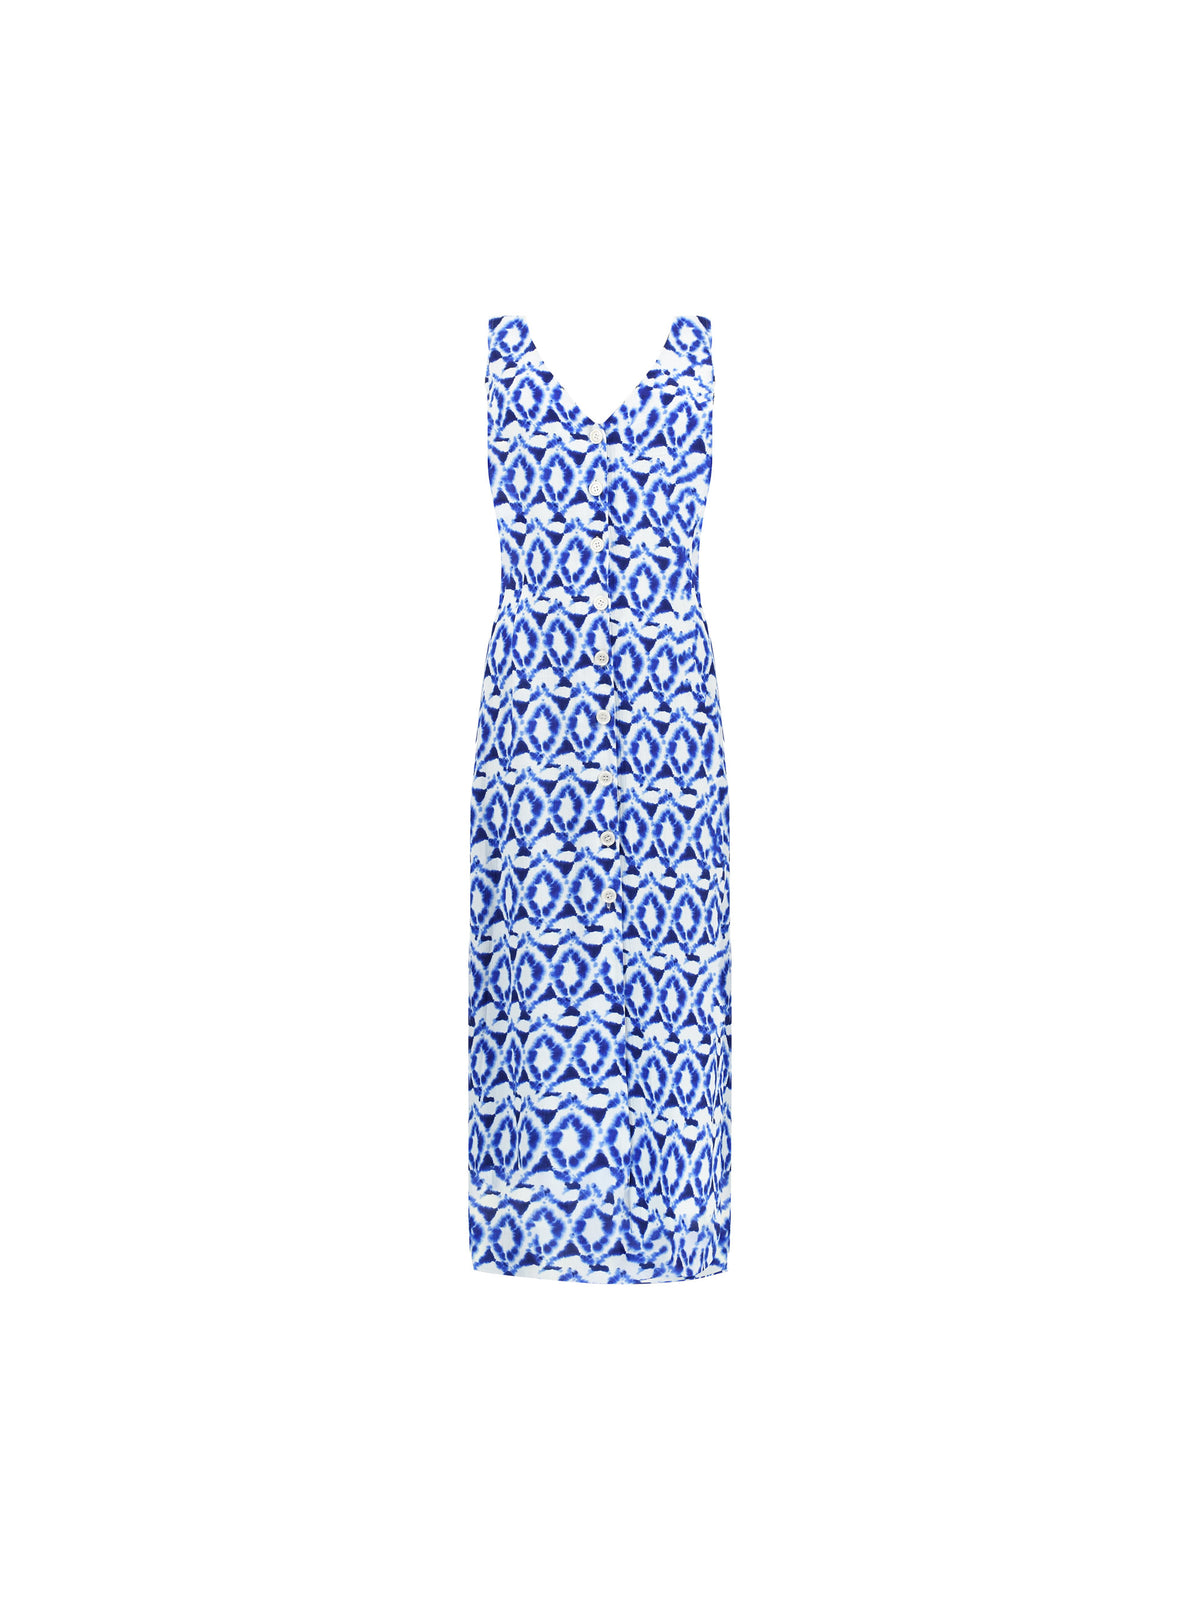 Petite Blue Tile Print V Neck Dress